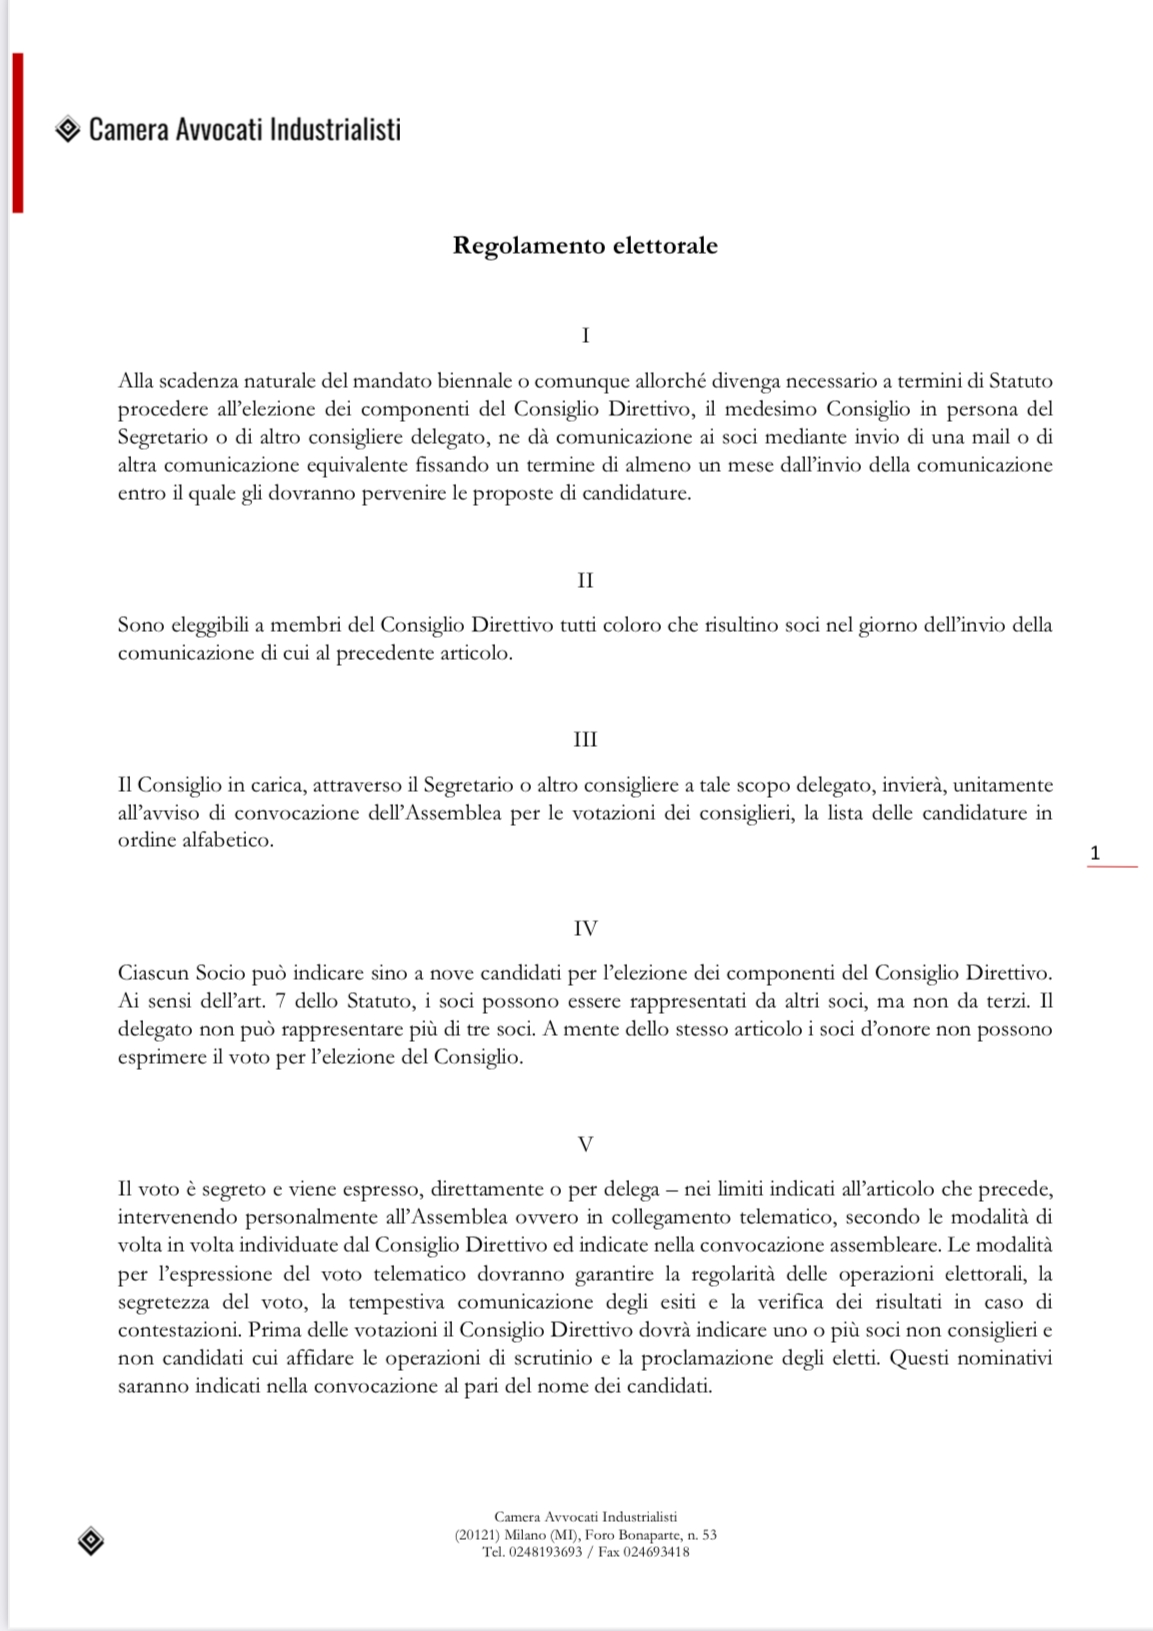 Regolamento elettorale - Camera Avvocati Industrialisti, Milano